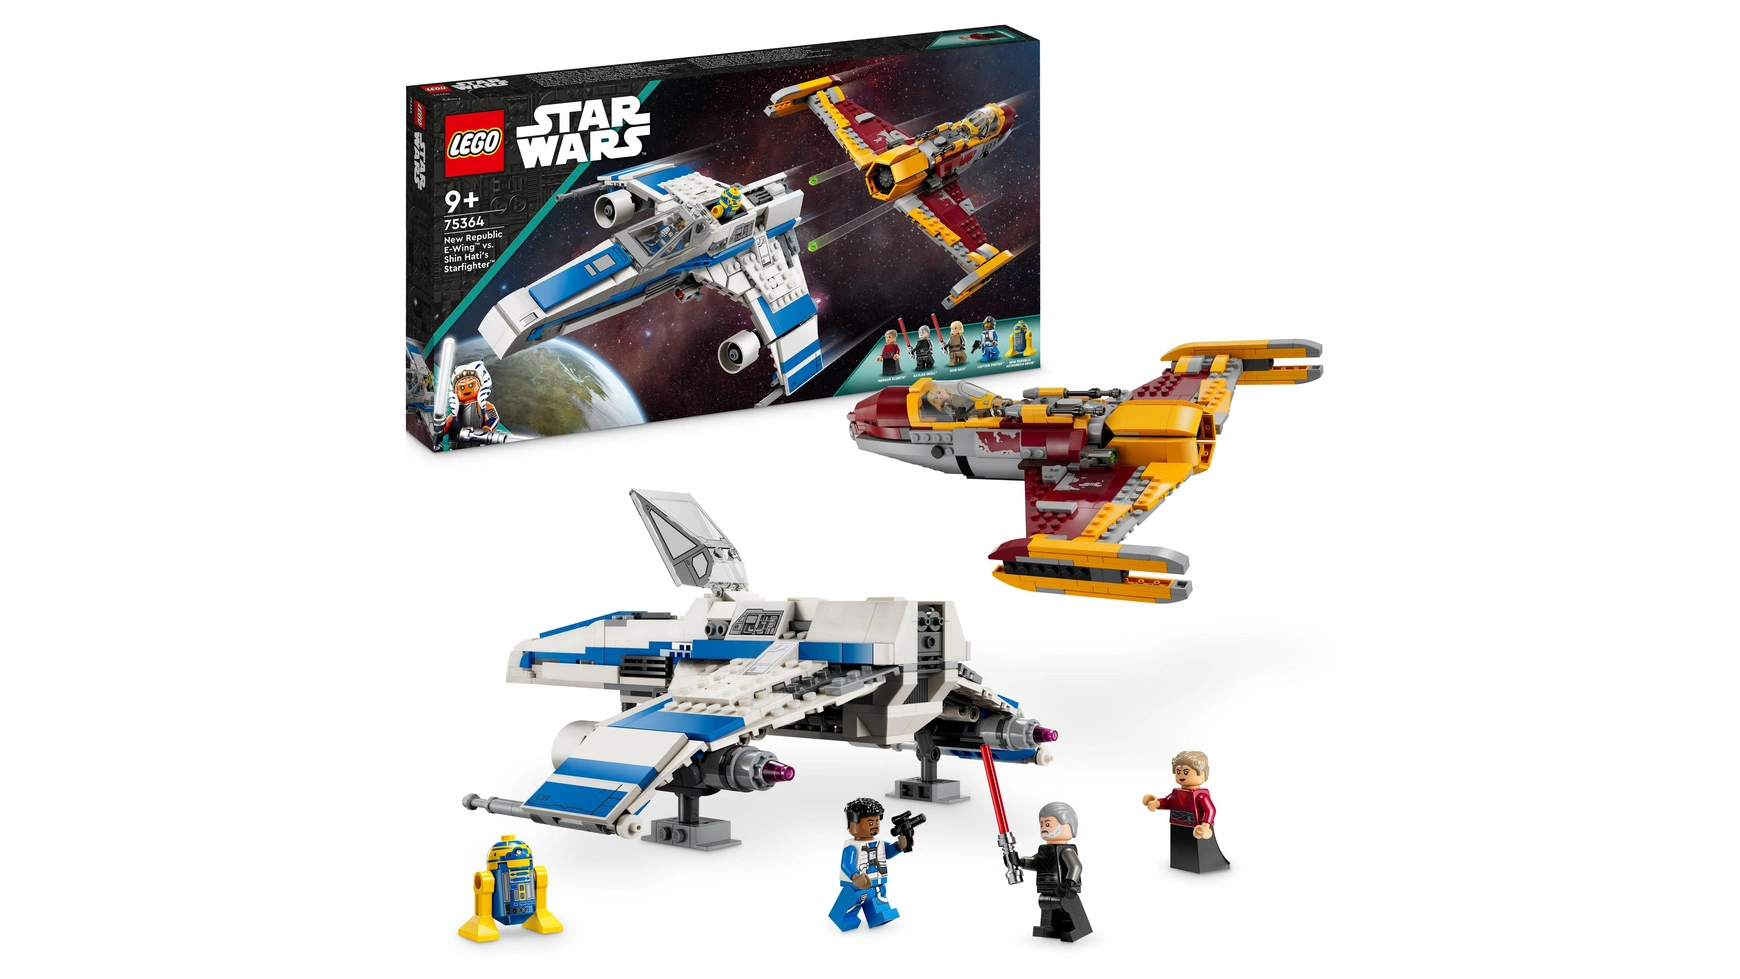 Lego Star Wars E-Wing Новой Республики против звездного истребителя Шин Хати